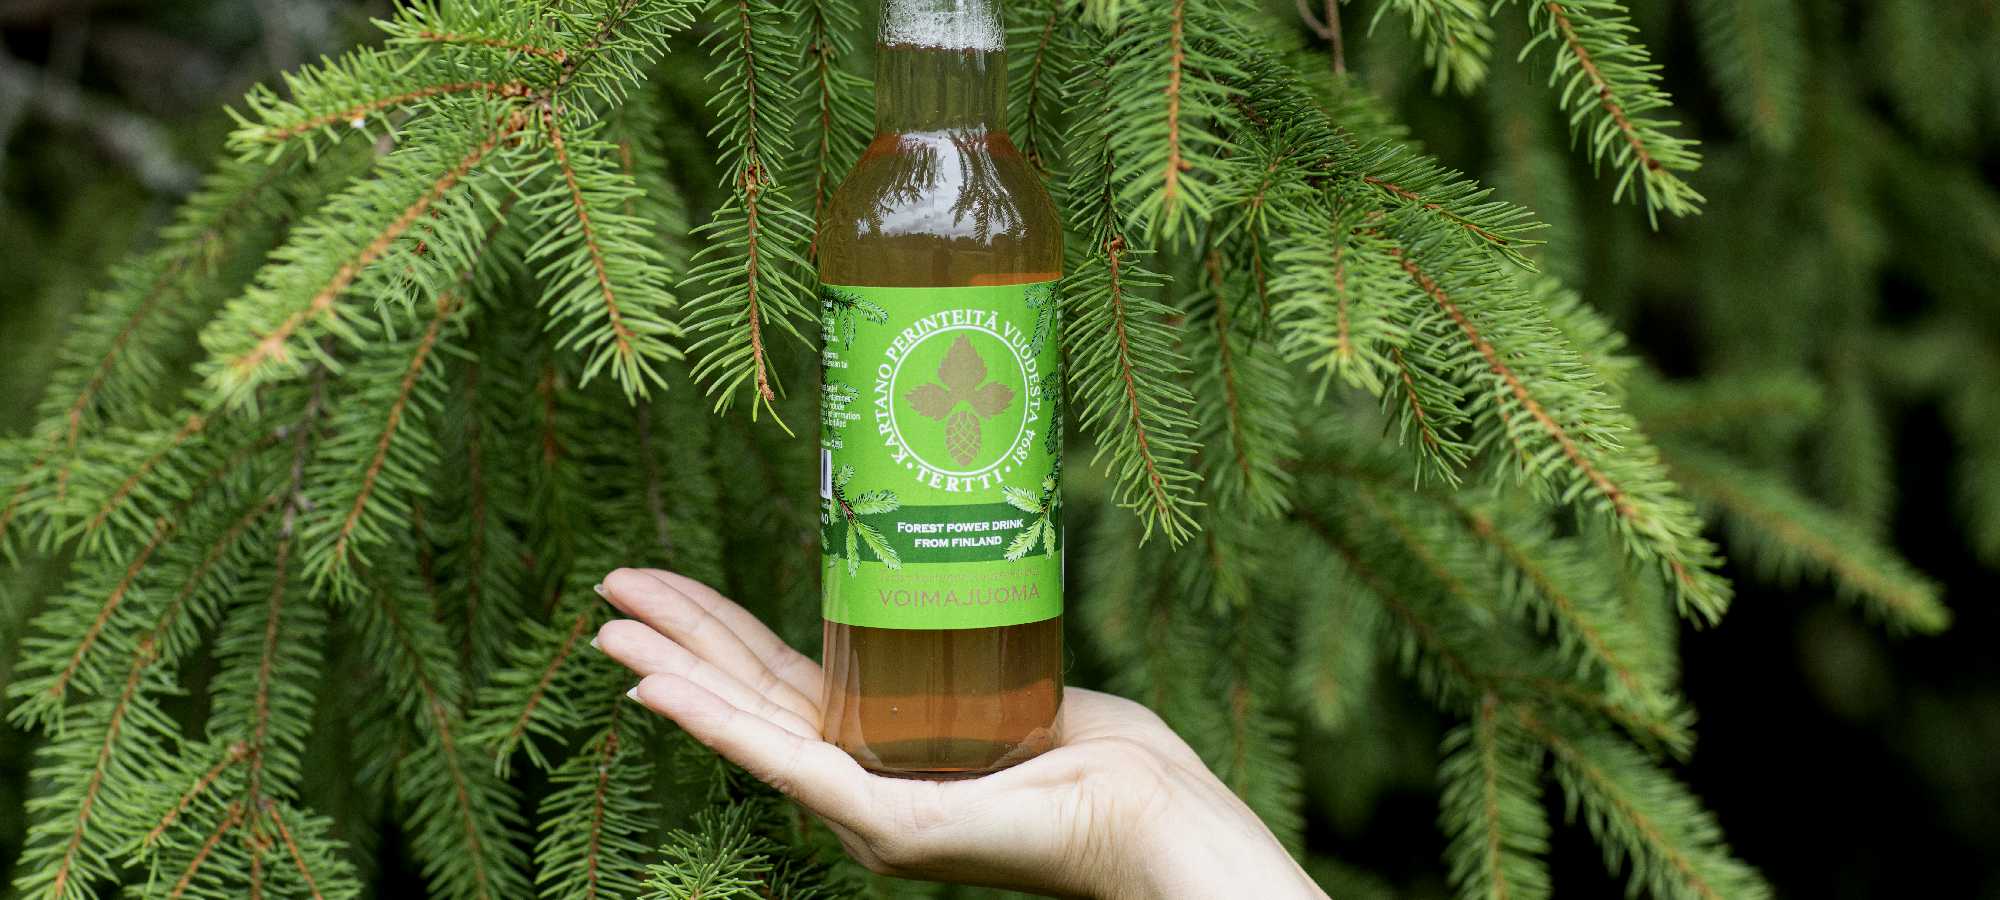 kuusenkerkkäjuoma forest power drink